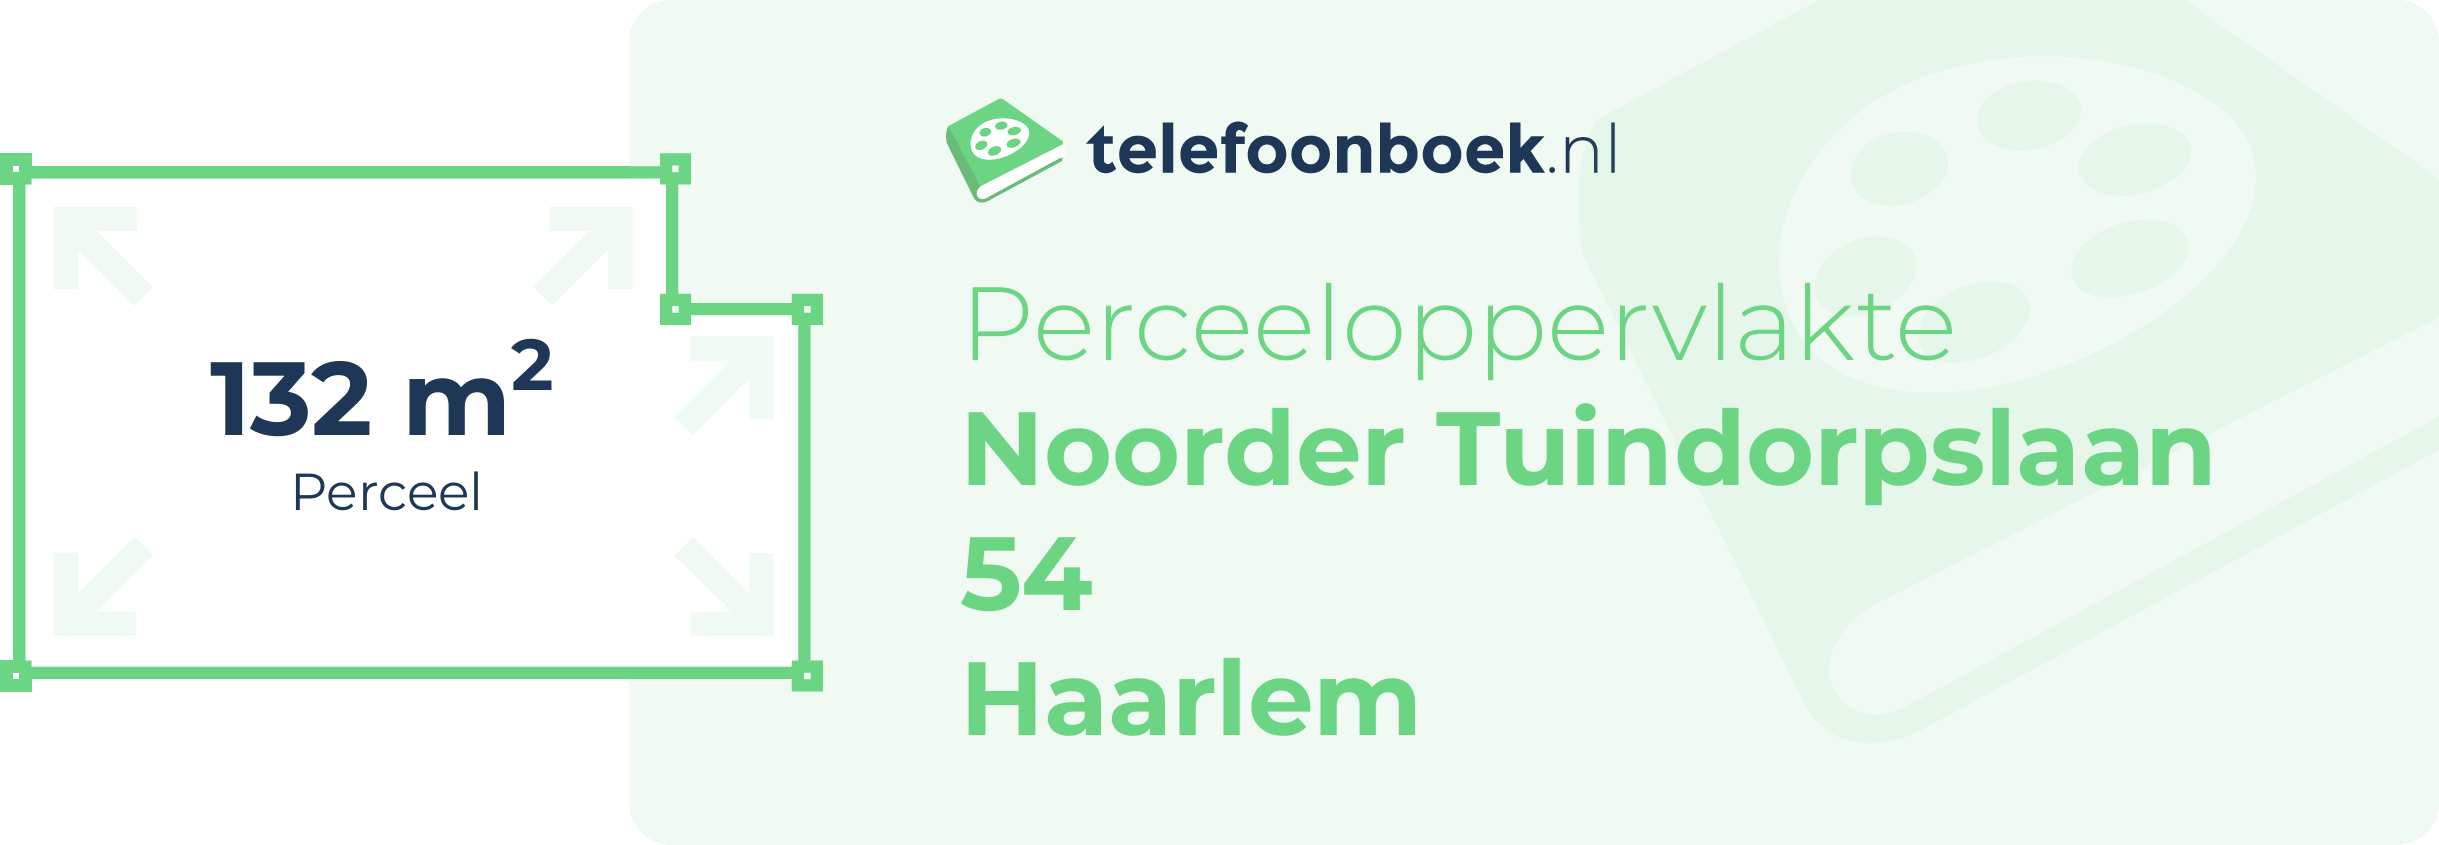 Perceeloppervlakte Noorder Tuindorpslaan 54 Haarlem